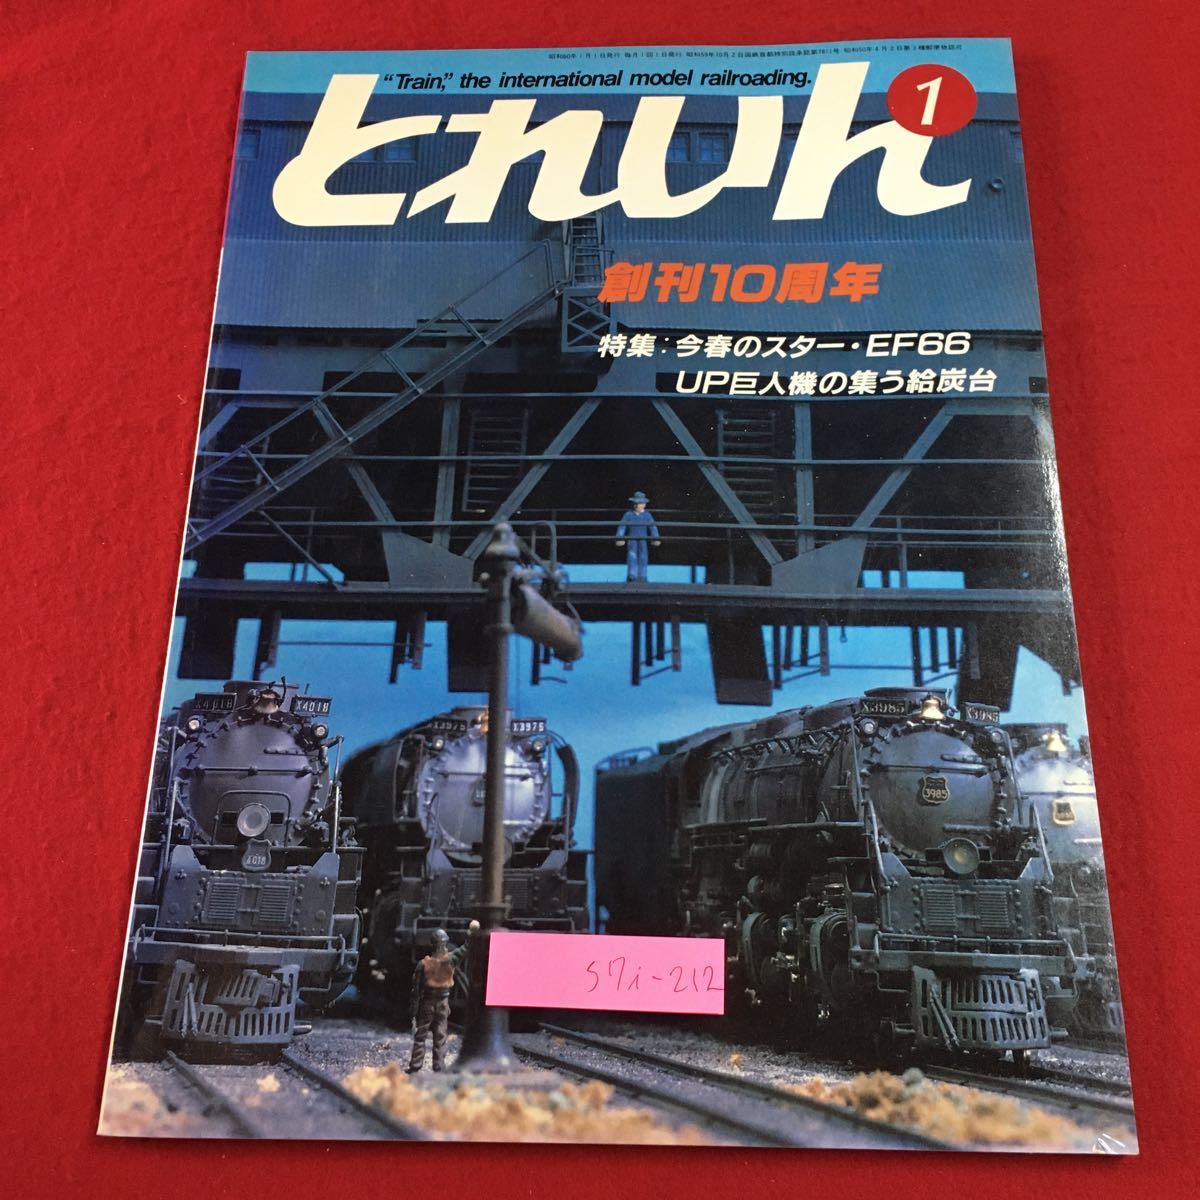 S7i-212 とれいん 1985年1月号 No.121 昭和60年1月1日 発行 プレス・アイゼンバーン 雑誌 模型 趣味 鉄道 写真 EF66 EB66 国鉄 ジオラマ_画像1